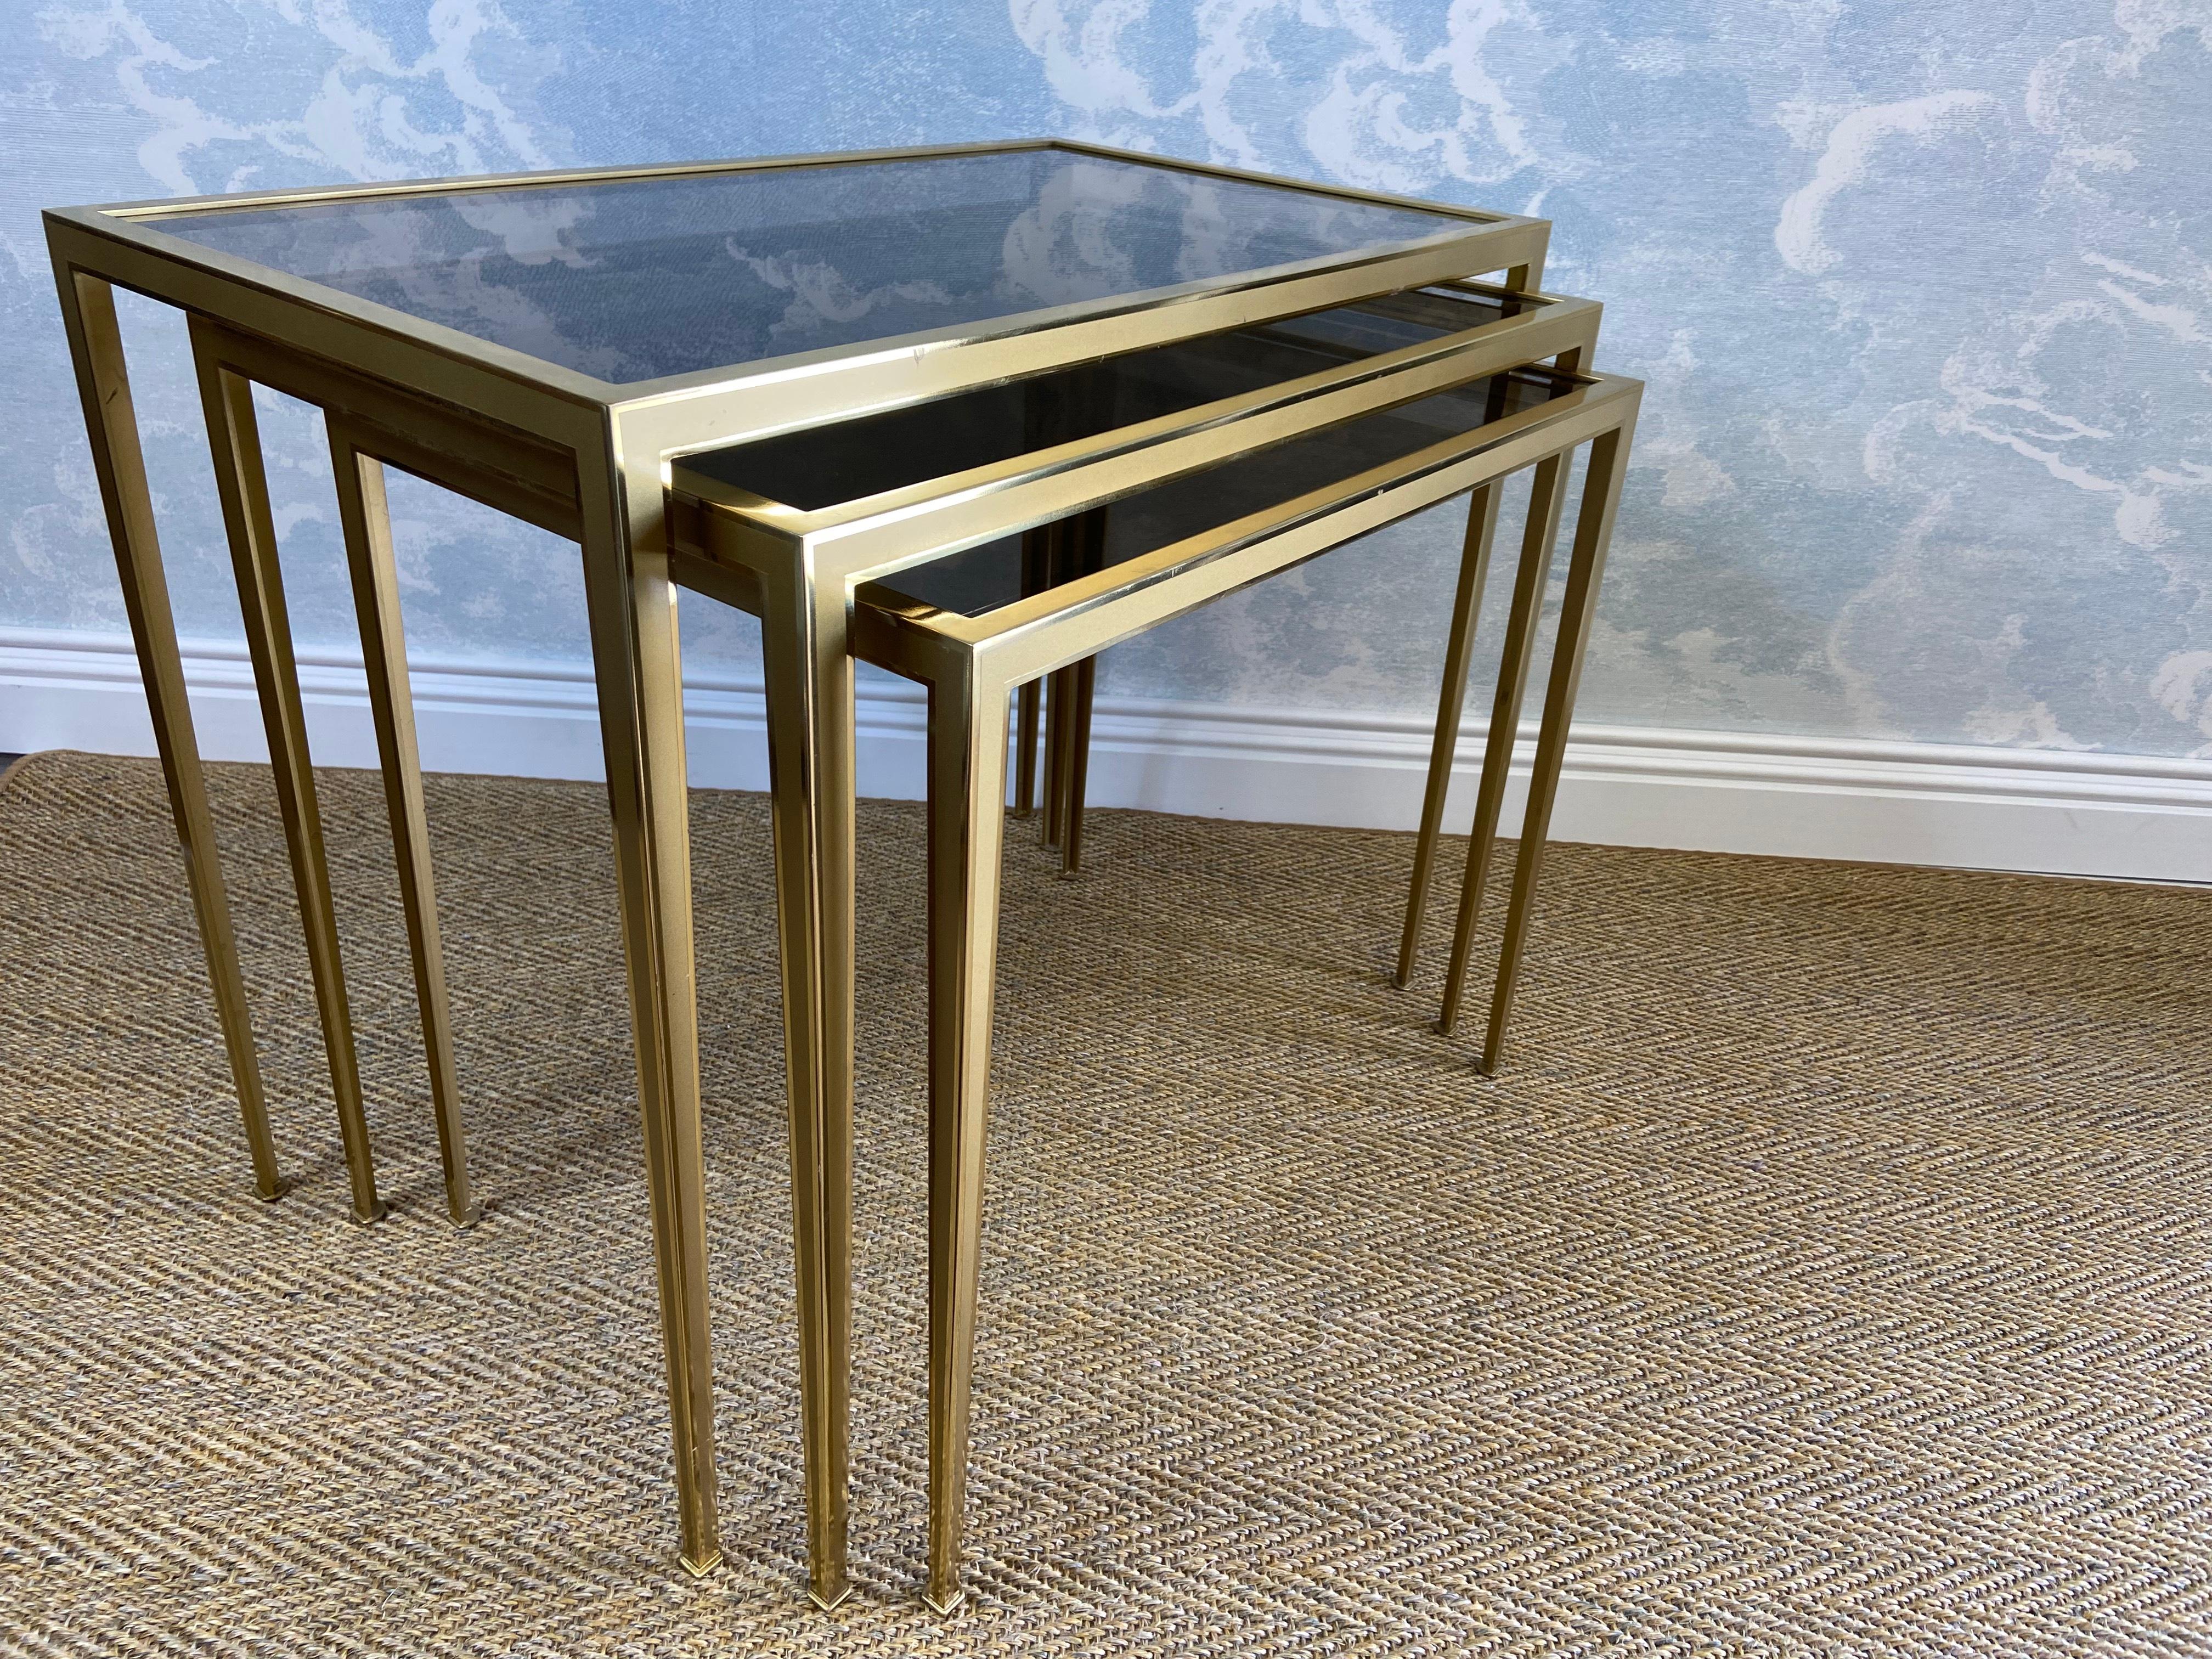 Cet élégant ensemble de trois tables gigognes a été fabriqué par Vereinigte Werkstätten à Munich dans les années 1960 et est en très bon état.

Posés sur des pieds étroits, les cadres en laiton bicolore ont une finition polie et brossée et